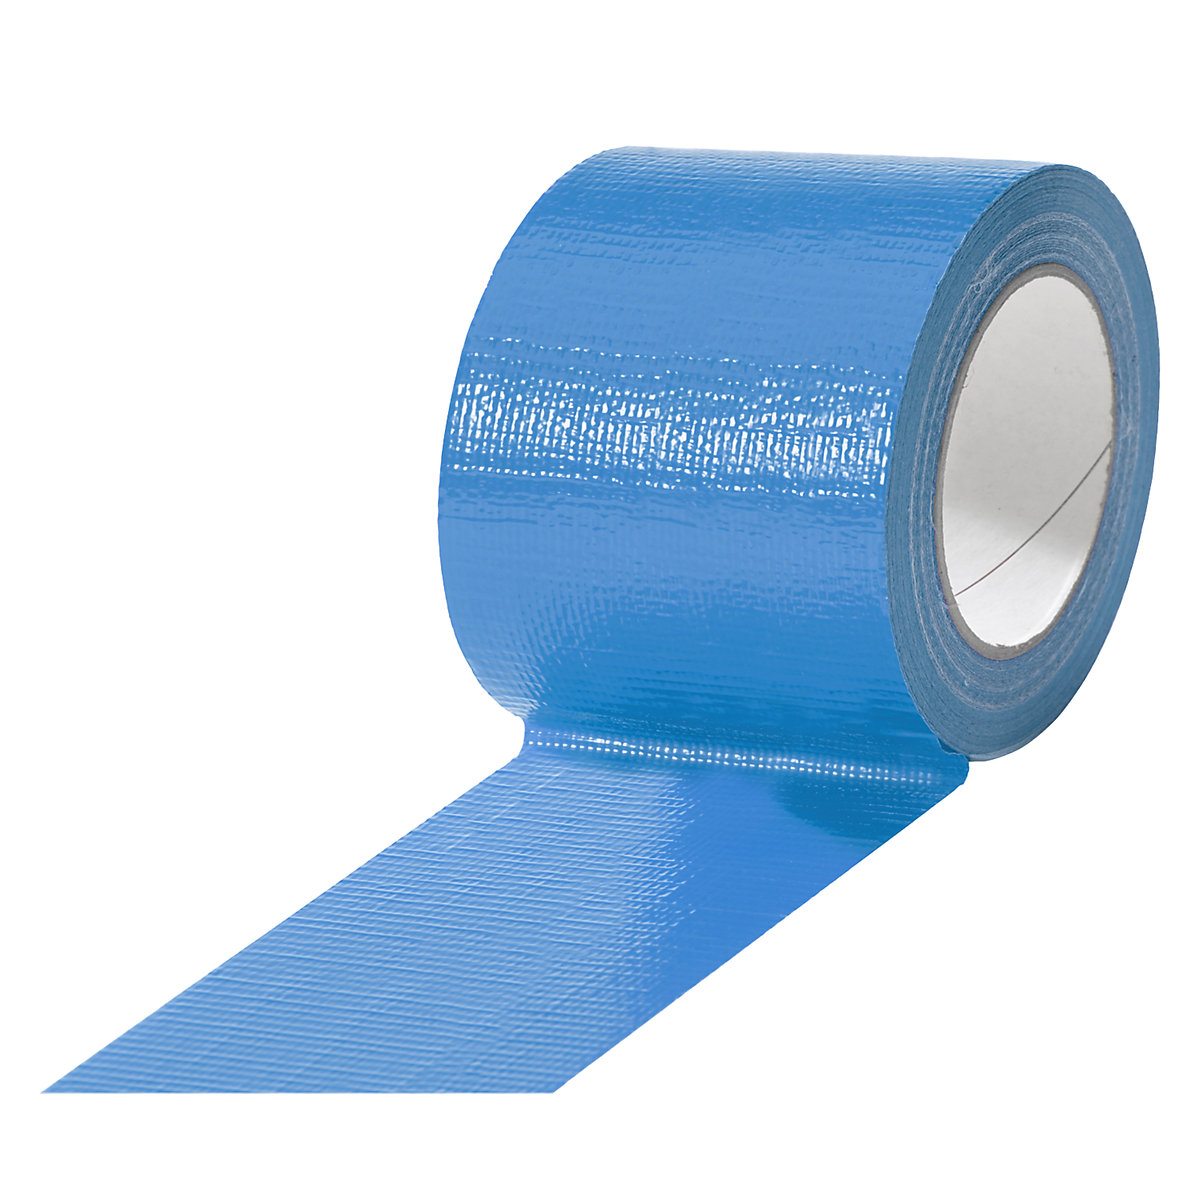 Traka od tkanine, u različitim bojama, pak. 12 rola, u plavoj boji, širina trake 75 mm